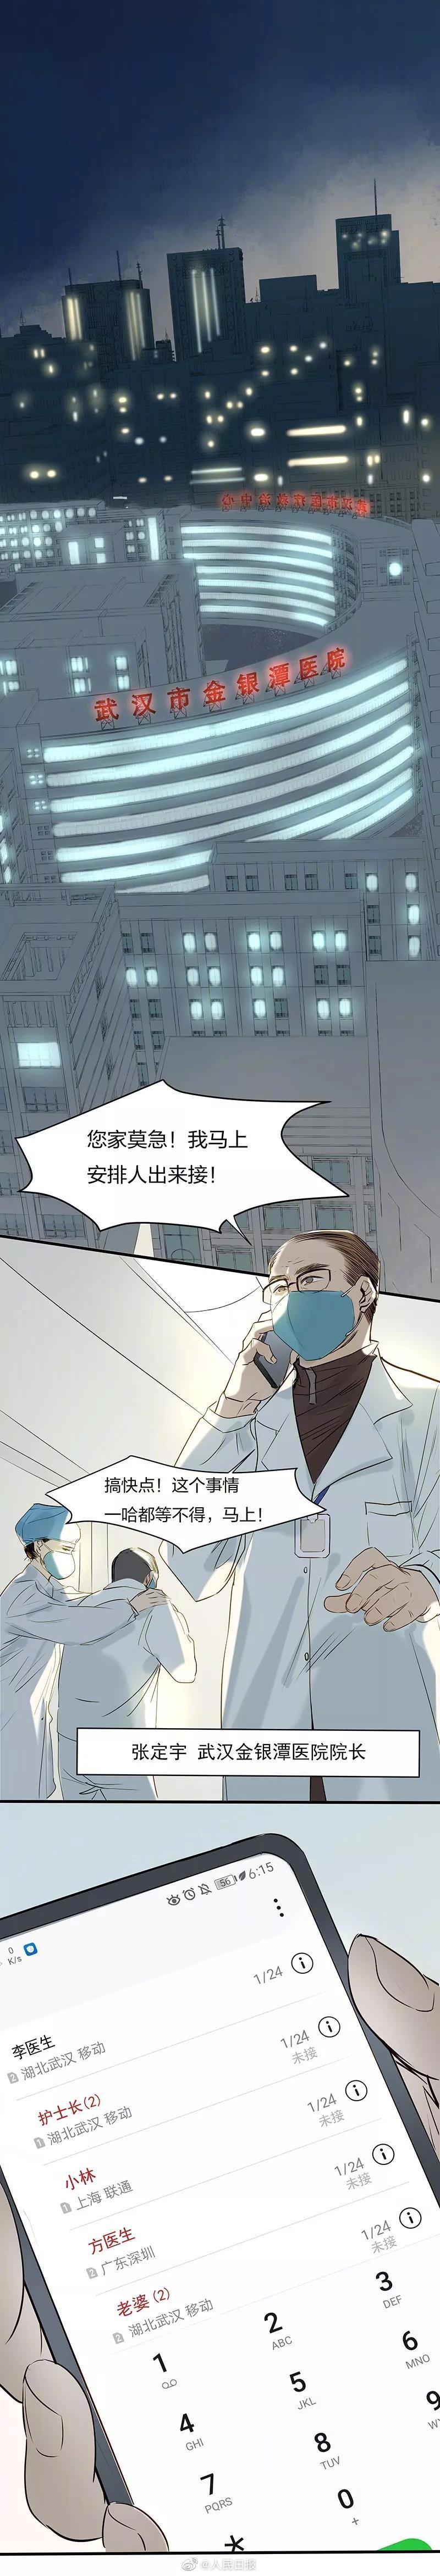 与时间赛跑的“病人”医生——金银潭医院院长真实故事改编漫画                                     